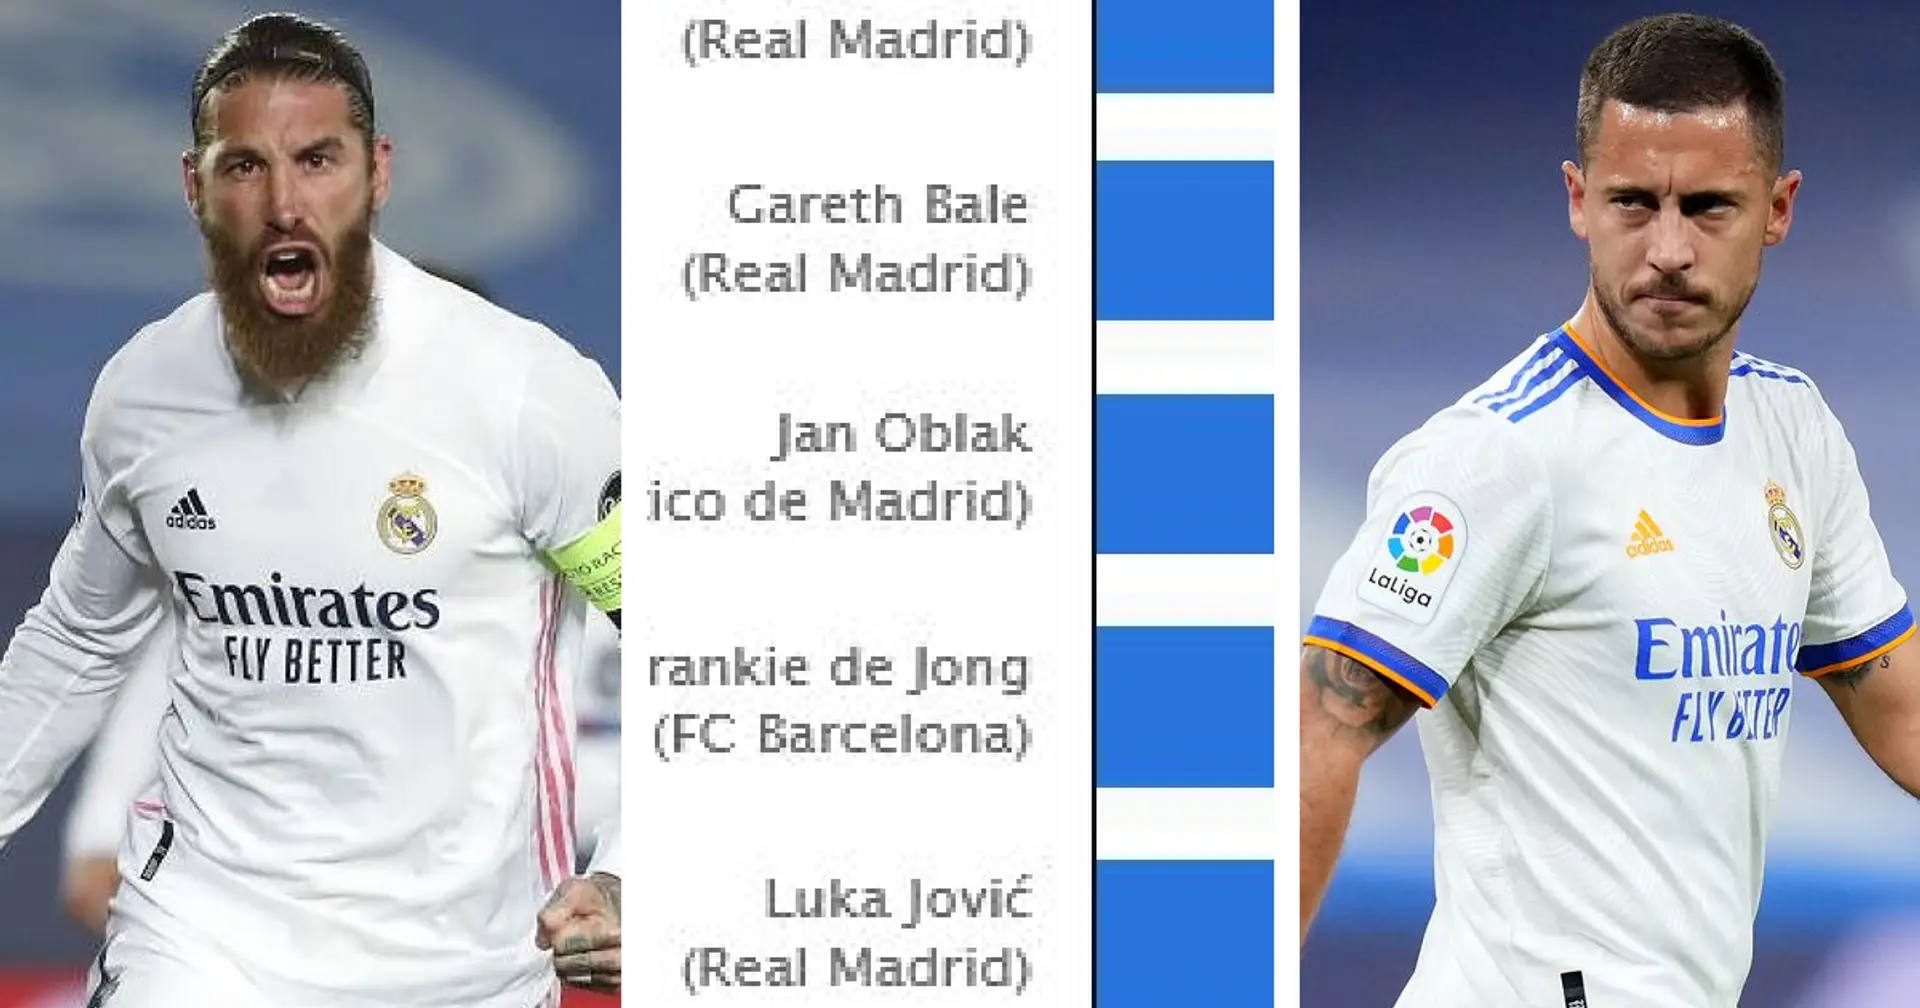 Top 8 des joueurs de la Liga les mieux payés en 2020/21 - 4 joueurs du Real Madrid présents